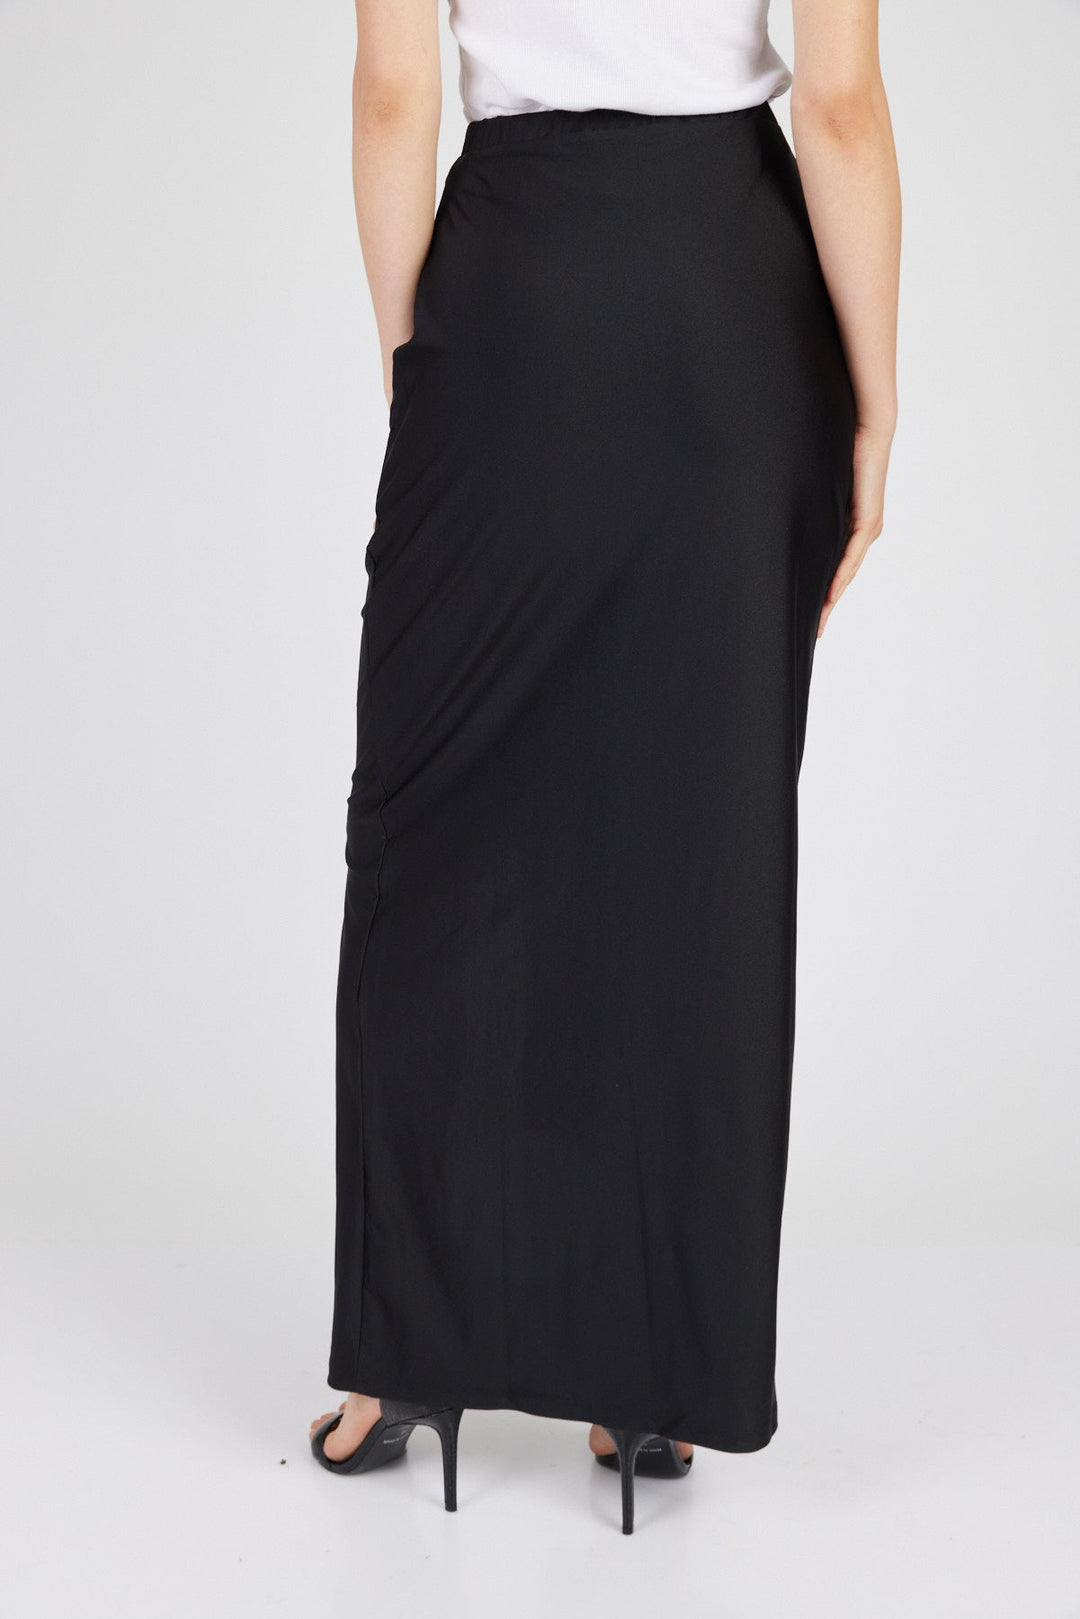 חצאית מקסי דפנה בצבע שחור - Mother Ofall